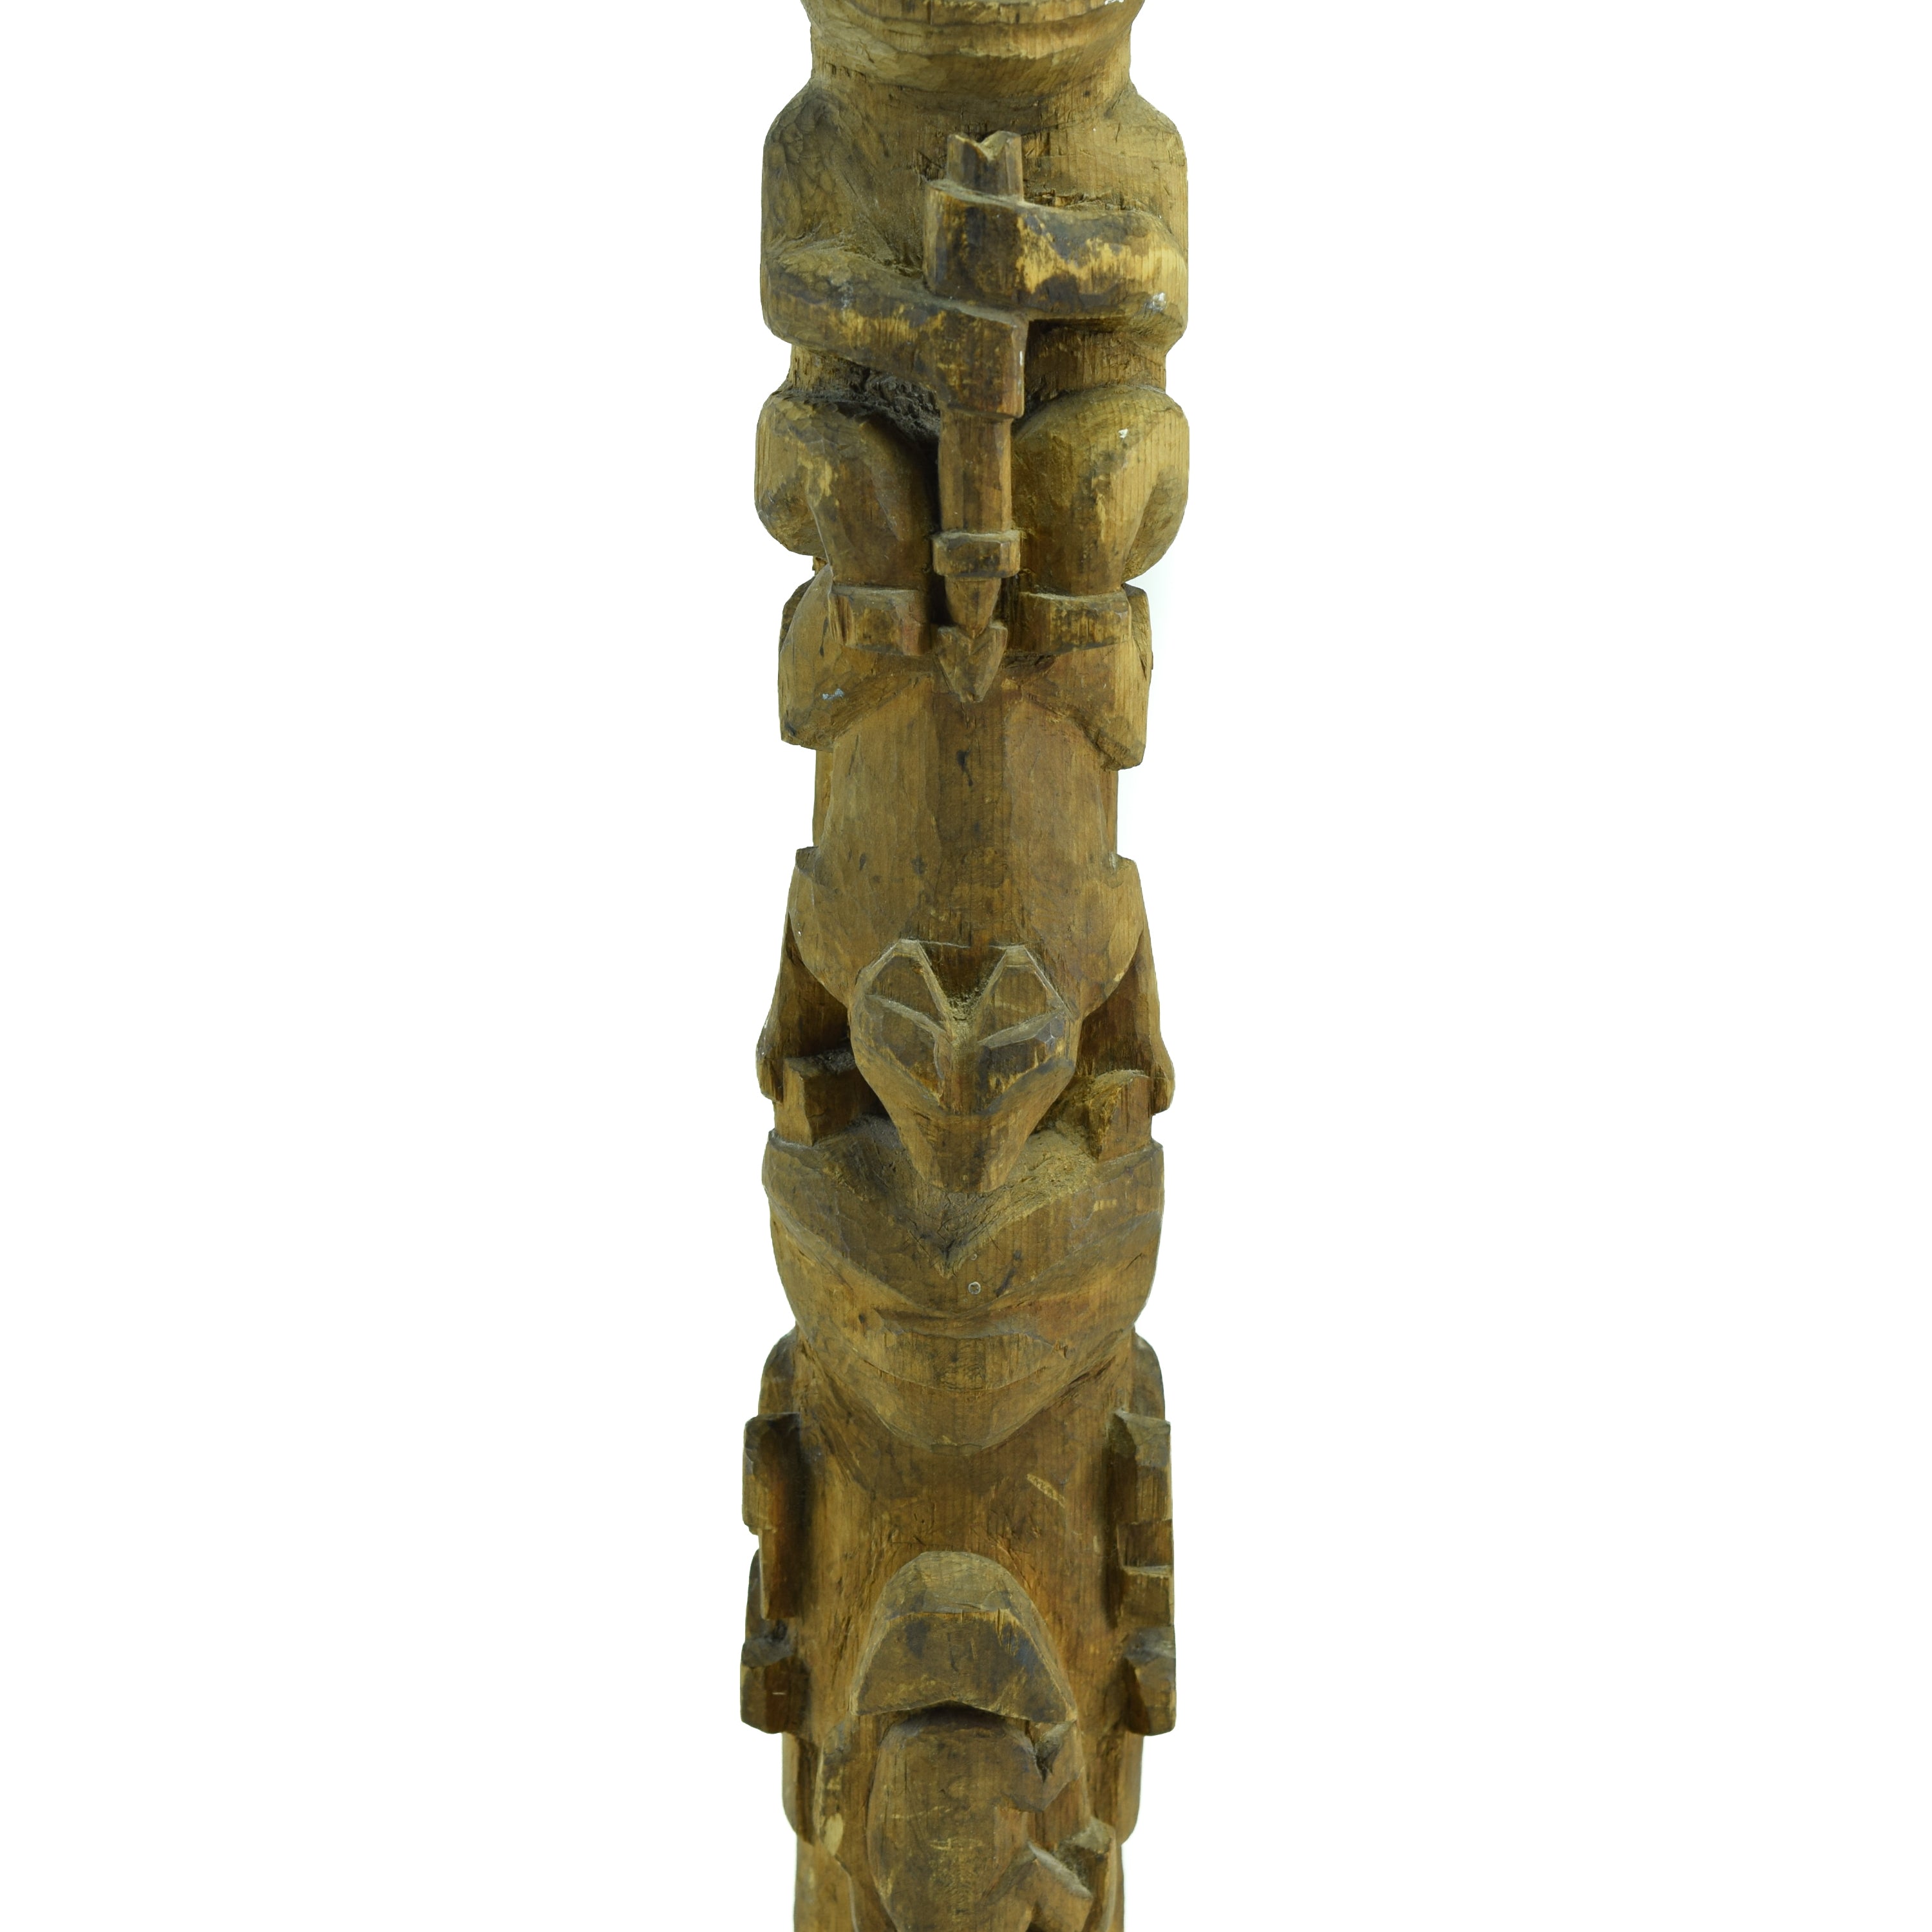 Multifigure Tlingit Totem